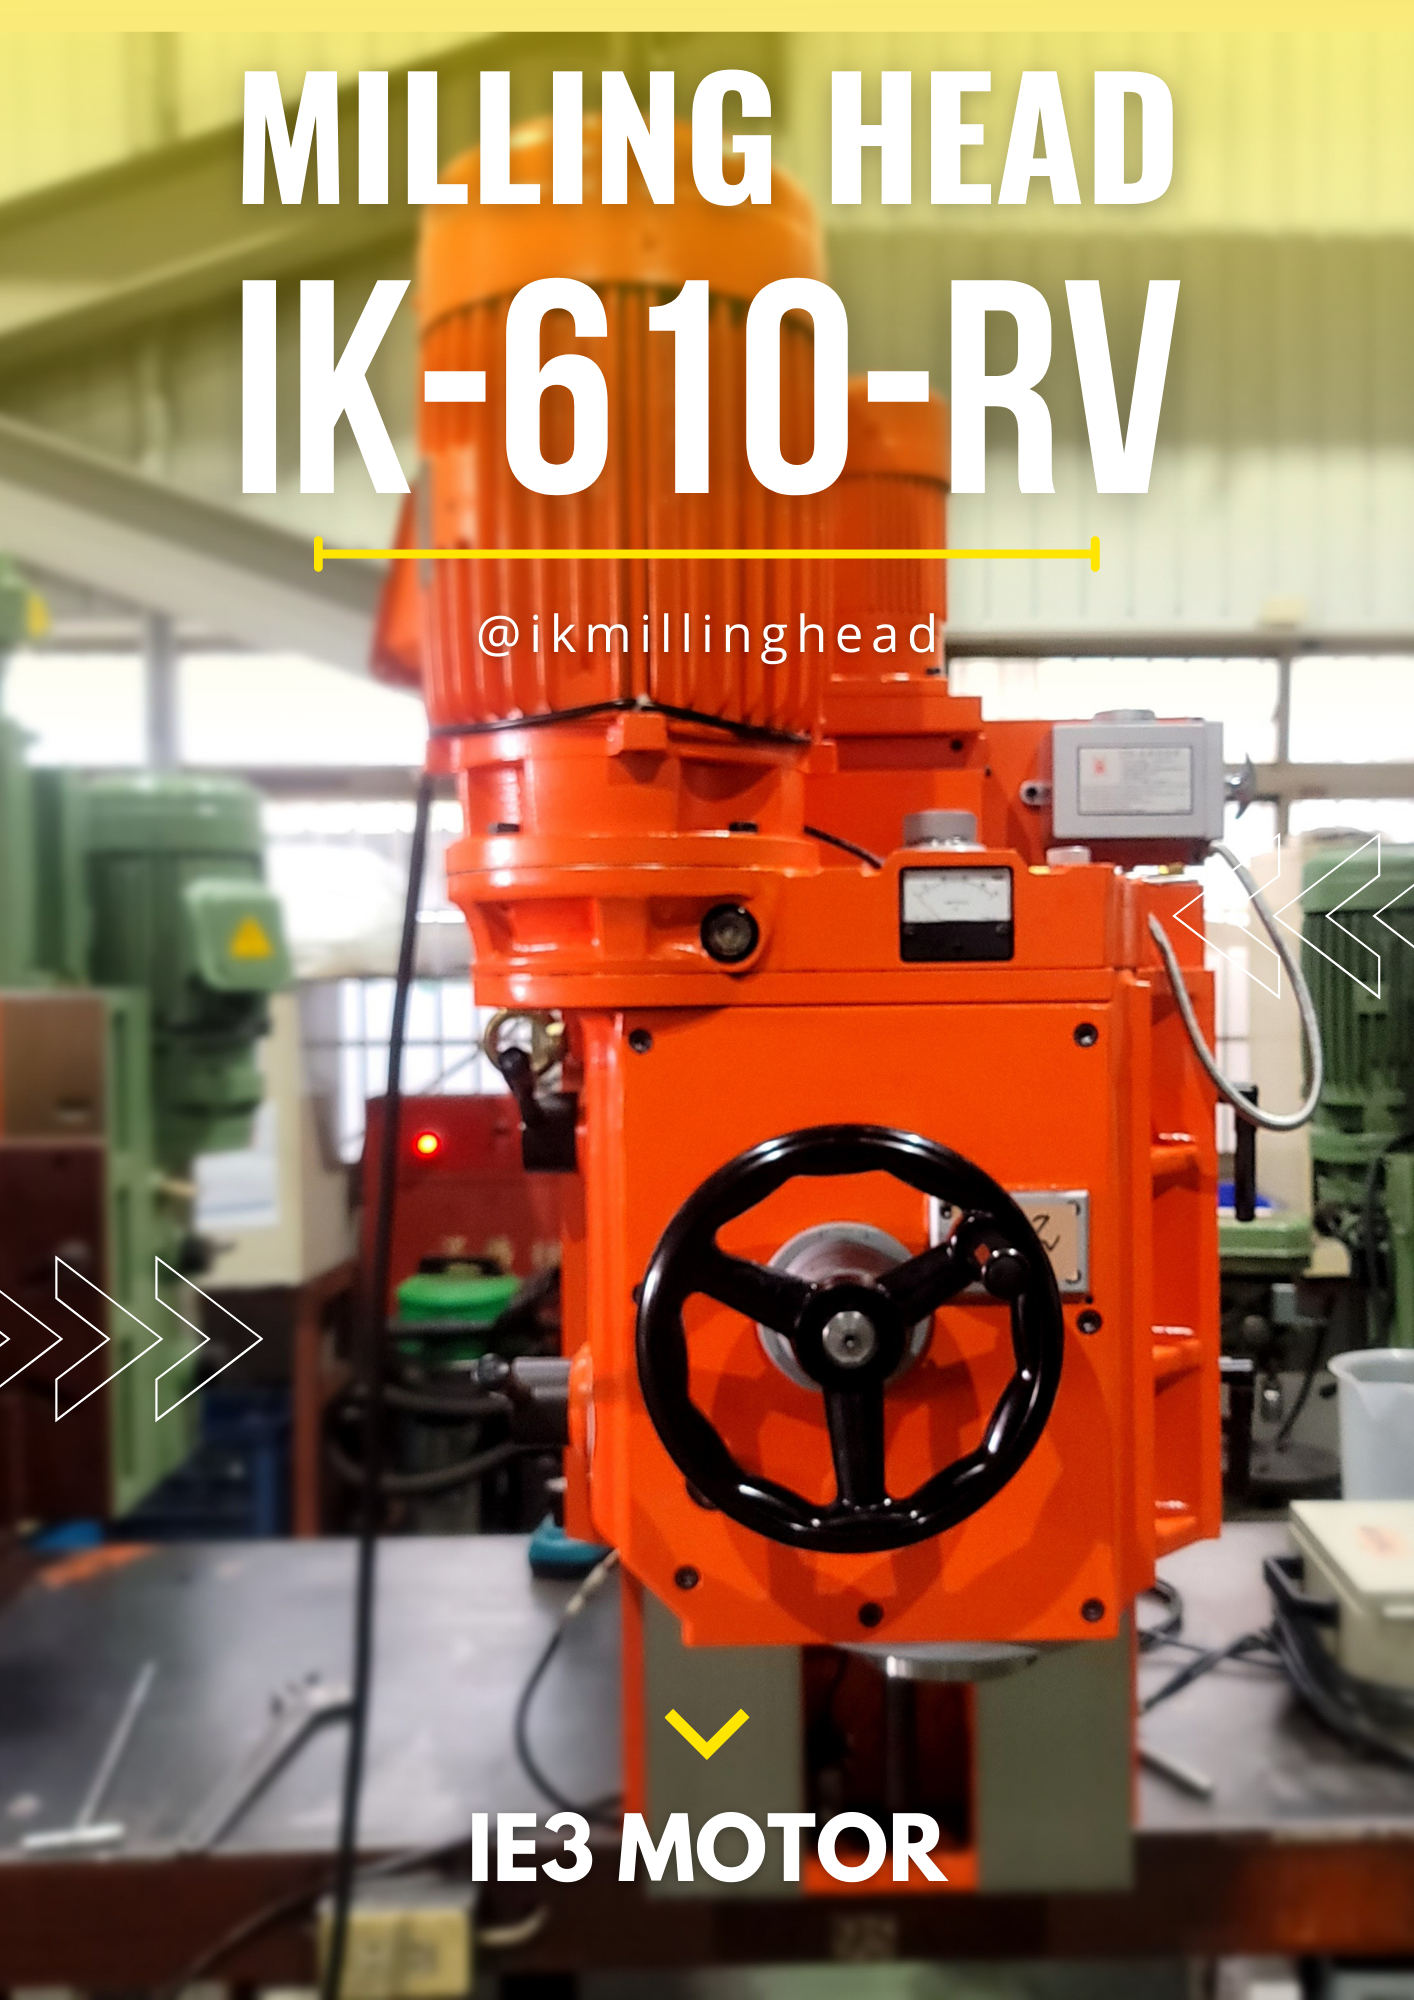 最新消息|IK-610-RV龍門銑床頭搭配IE3馬達